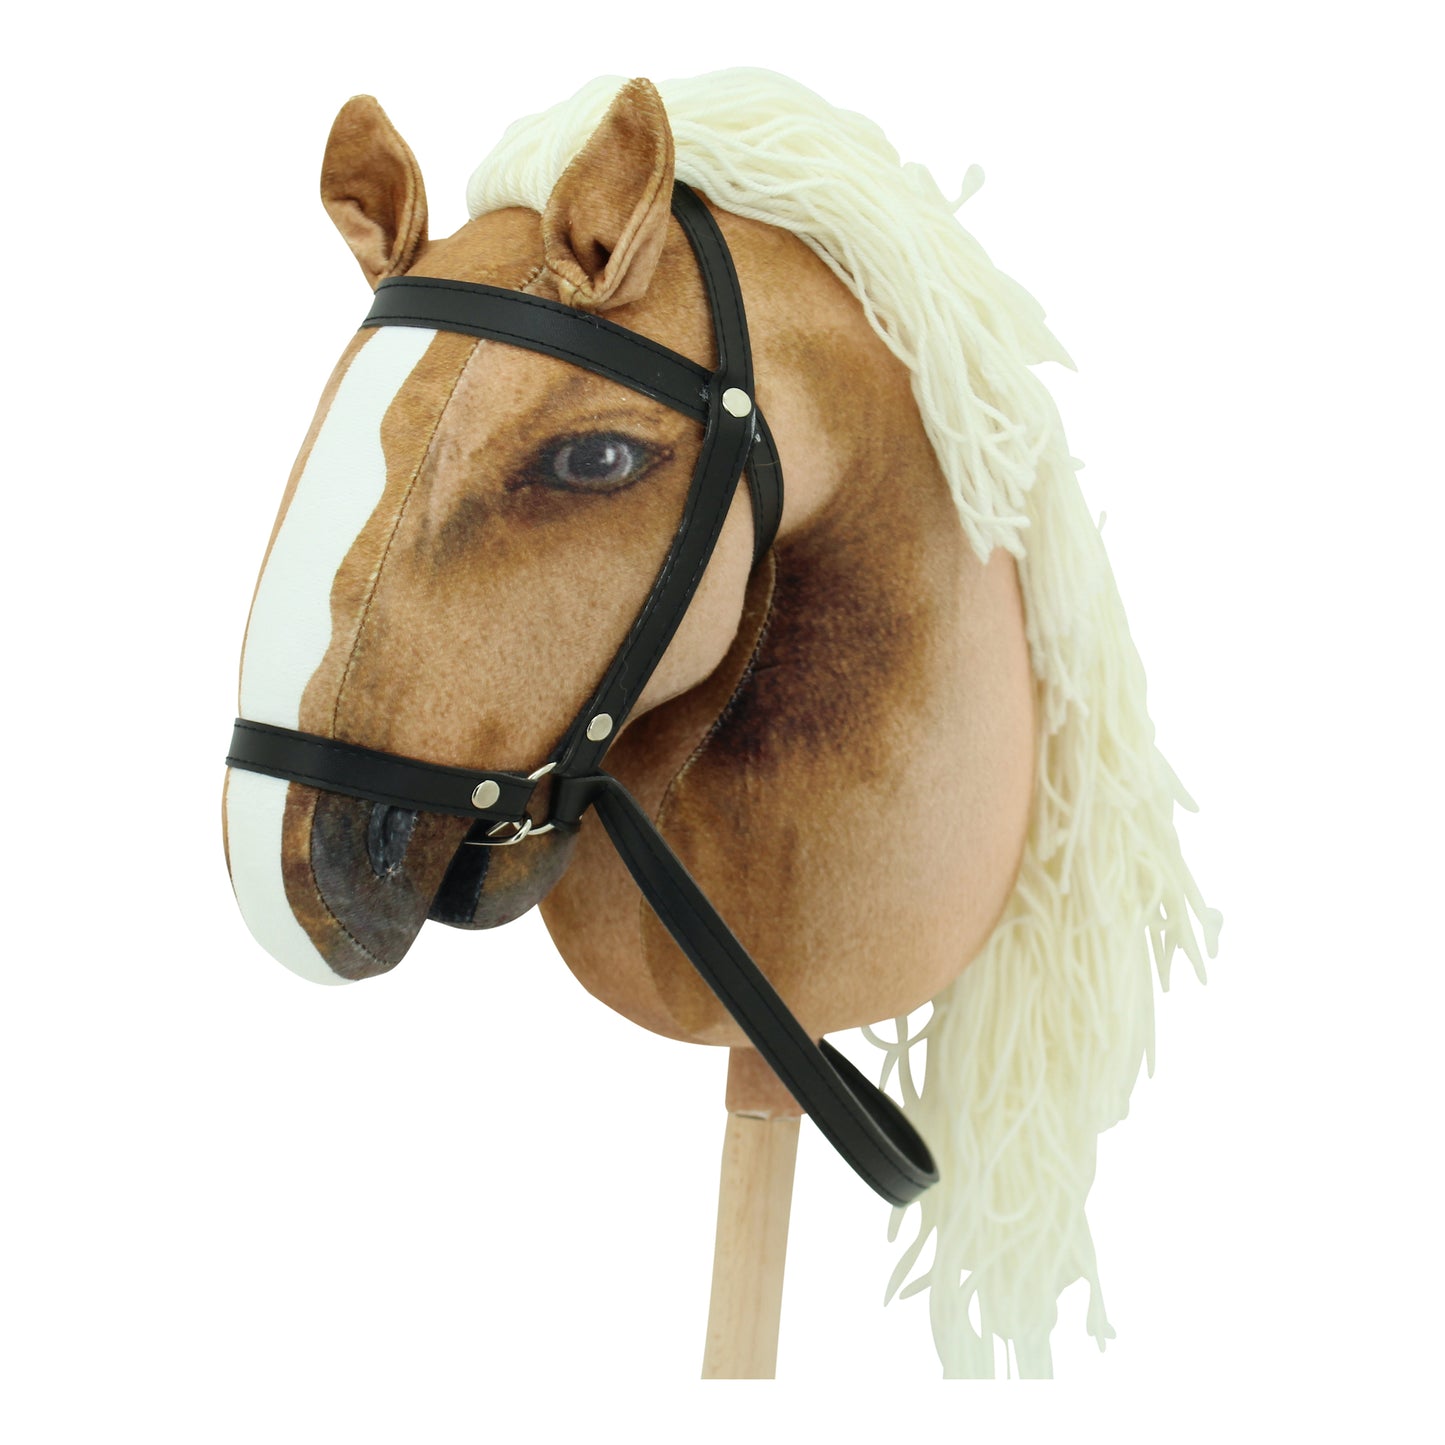 Haasenstrauch Sweety Toys Hobbyhorse-2er Set Steckenpferd in hellbraun und in dunkelbraun geeignet für Hobbyhorsing & Transportbeutel